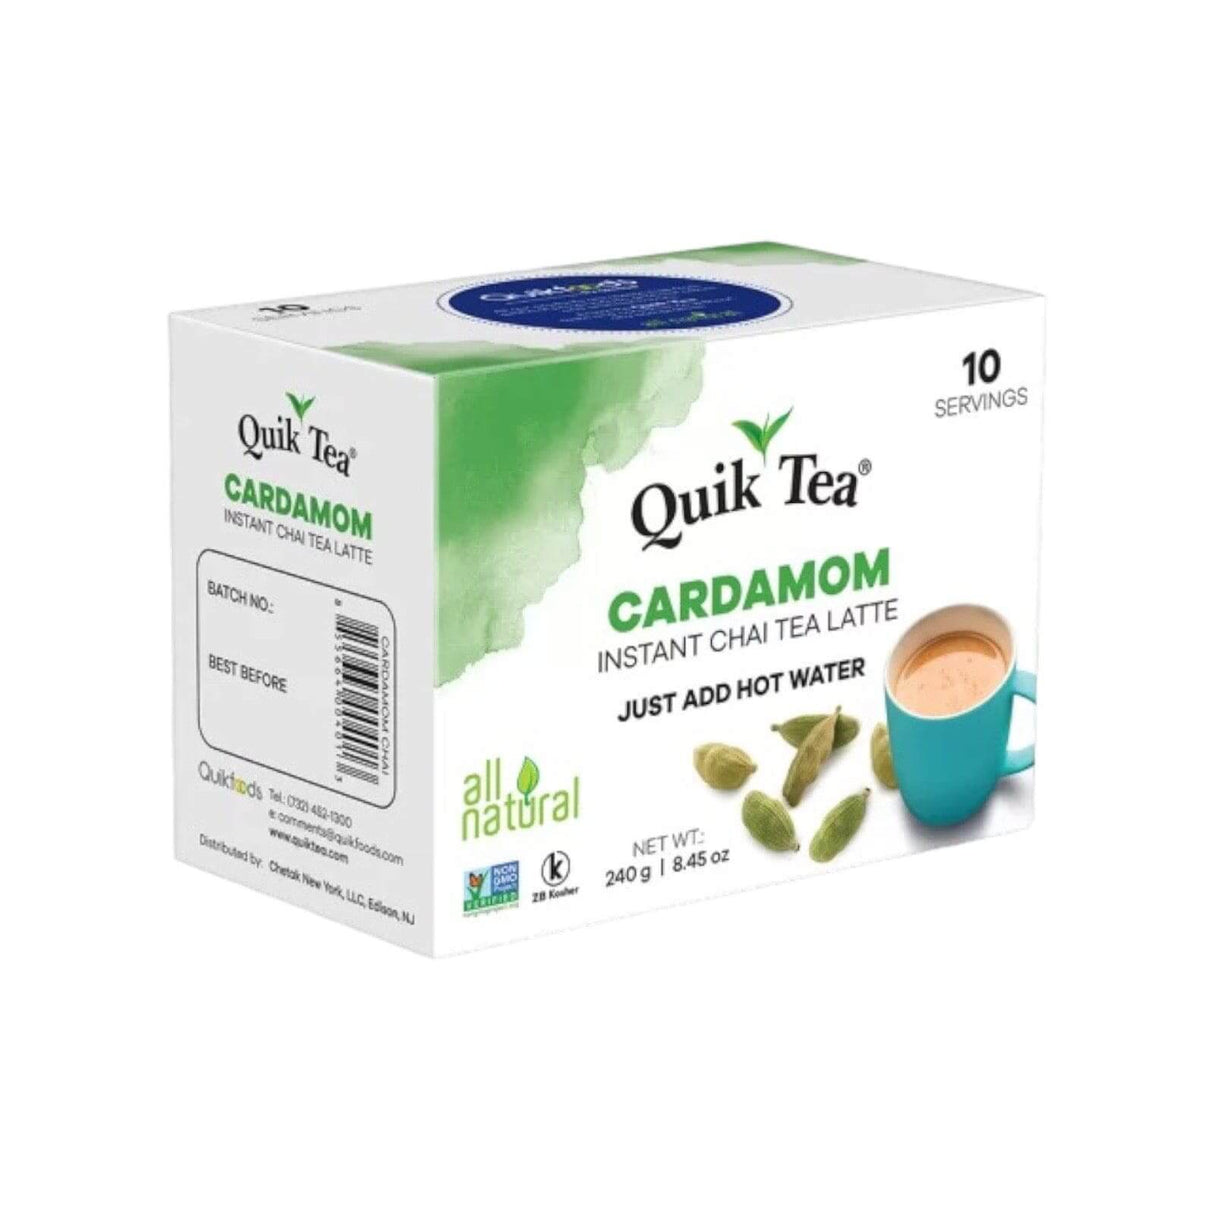 Quik Tea Cardamom Instant Chai Tea Latte